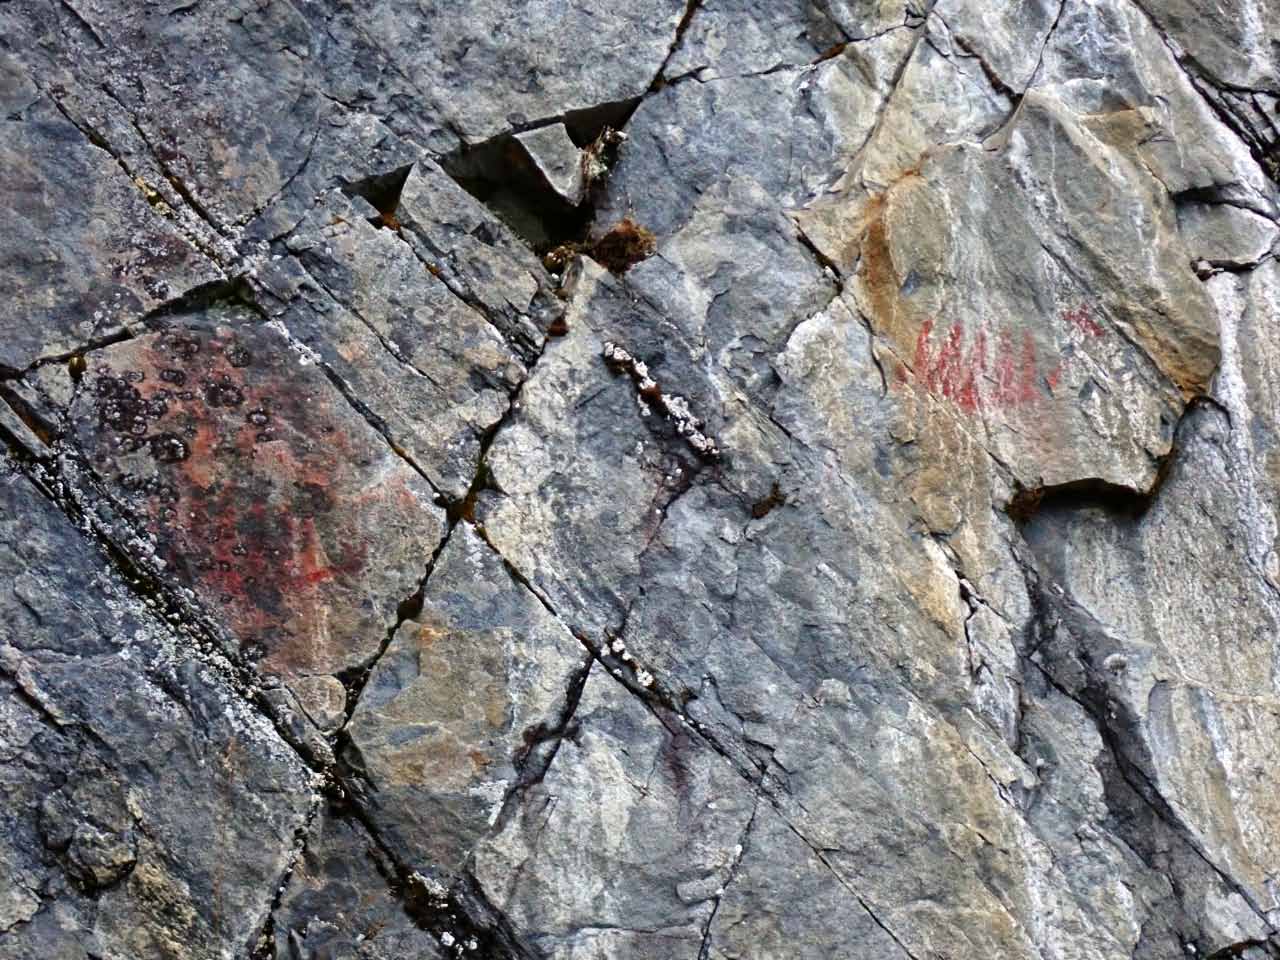 Kuva: Kalliomaalauksessa näkyy selvästi mm. kaksi ns. hirvivenekuviota. Lahden museot / Päijät-Hämeen alueellinen vastuumuseo. CC BY 4.0 Esko Tikkala 4.11.2020